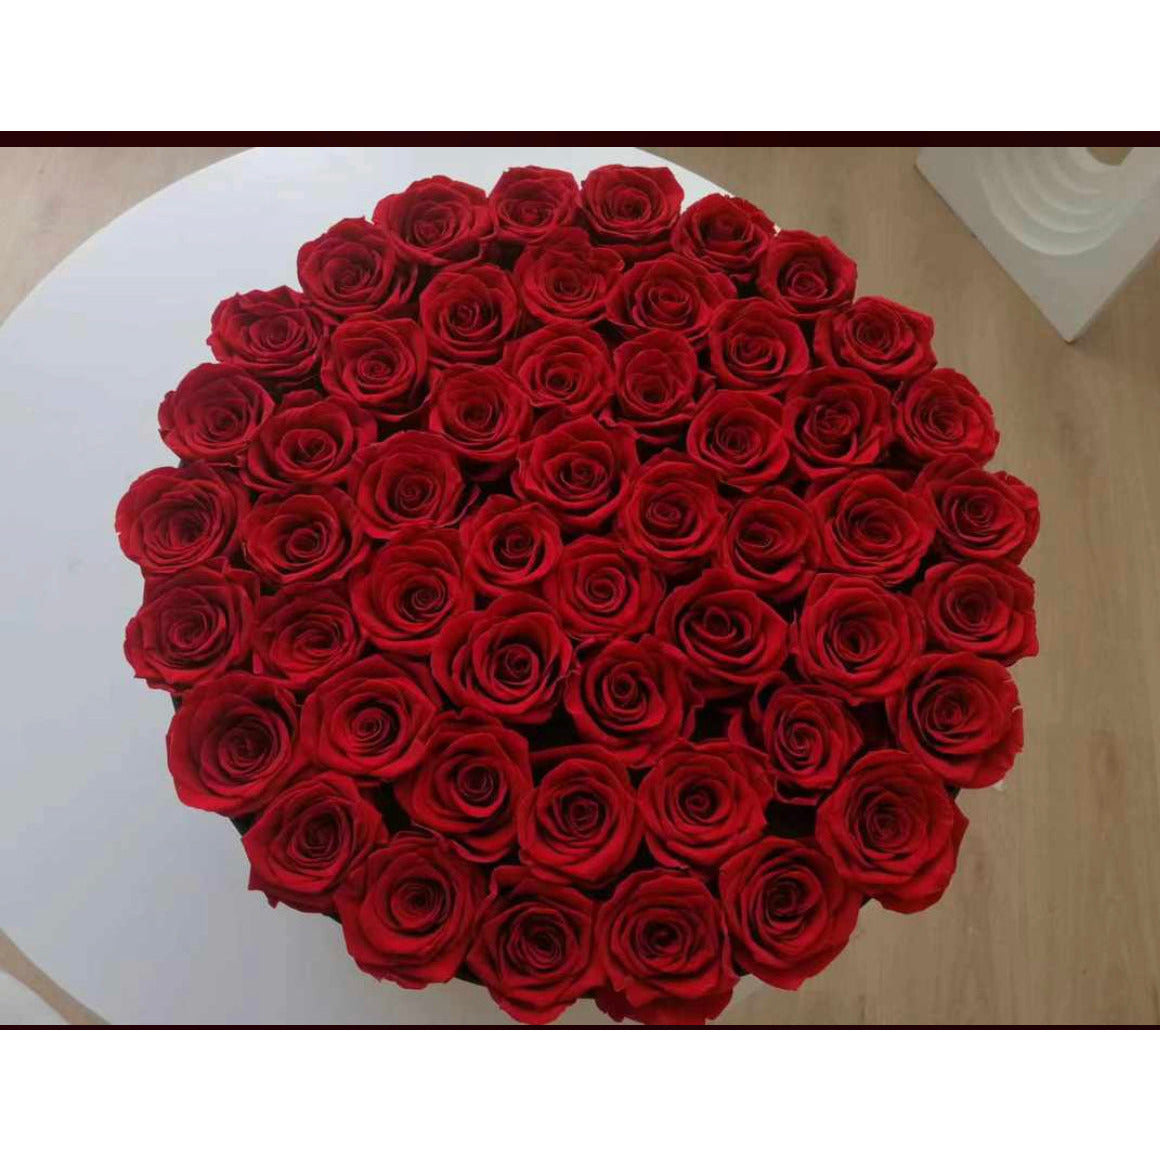 Large Love Box – Vitae Roses